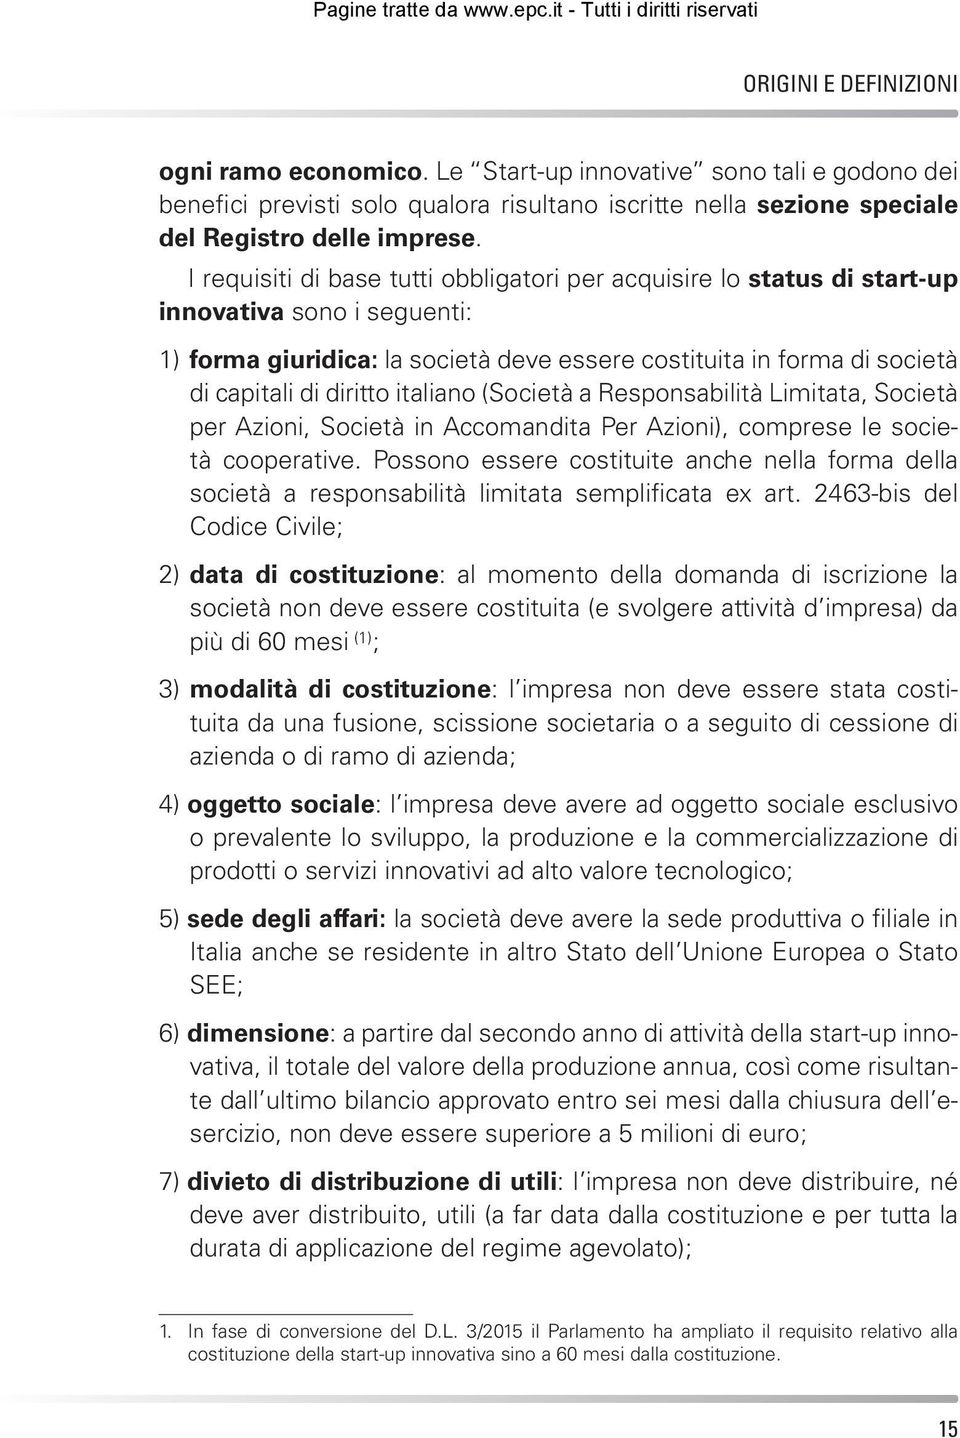 italiano (Società a Responsabilità Limitata, Società per Azioni, Società in Accomandita Per Azioni), comprese le società cooperative.